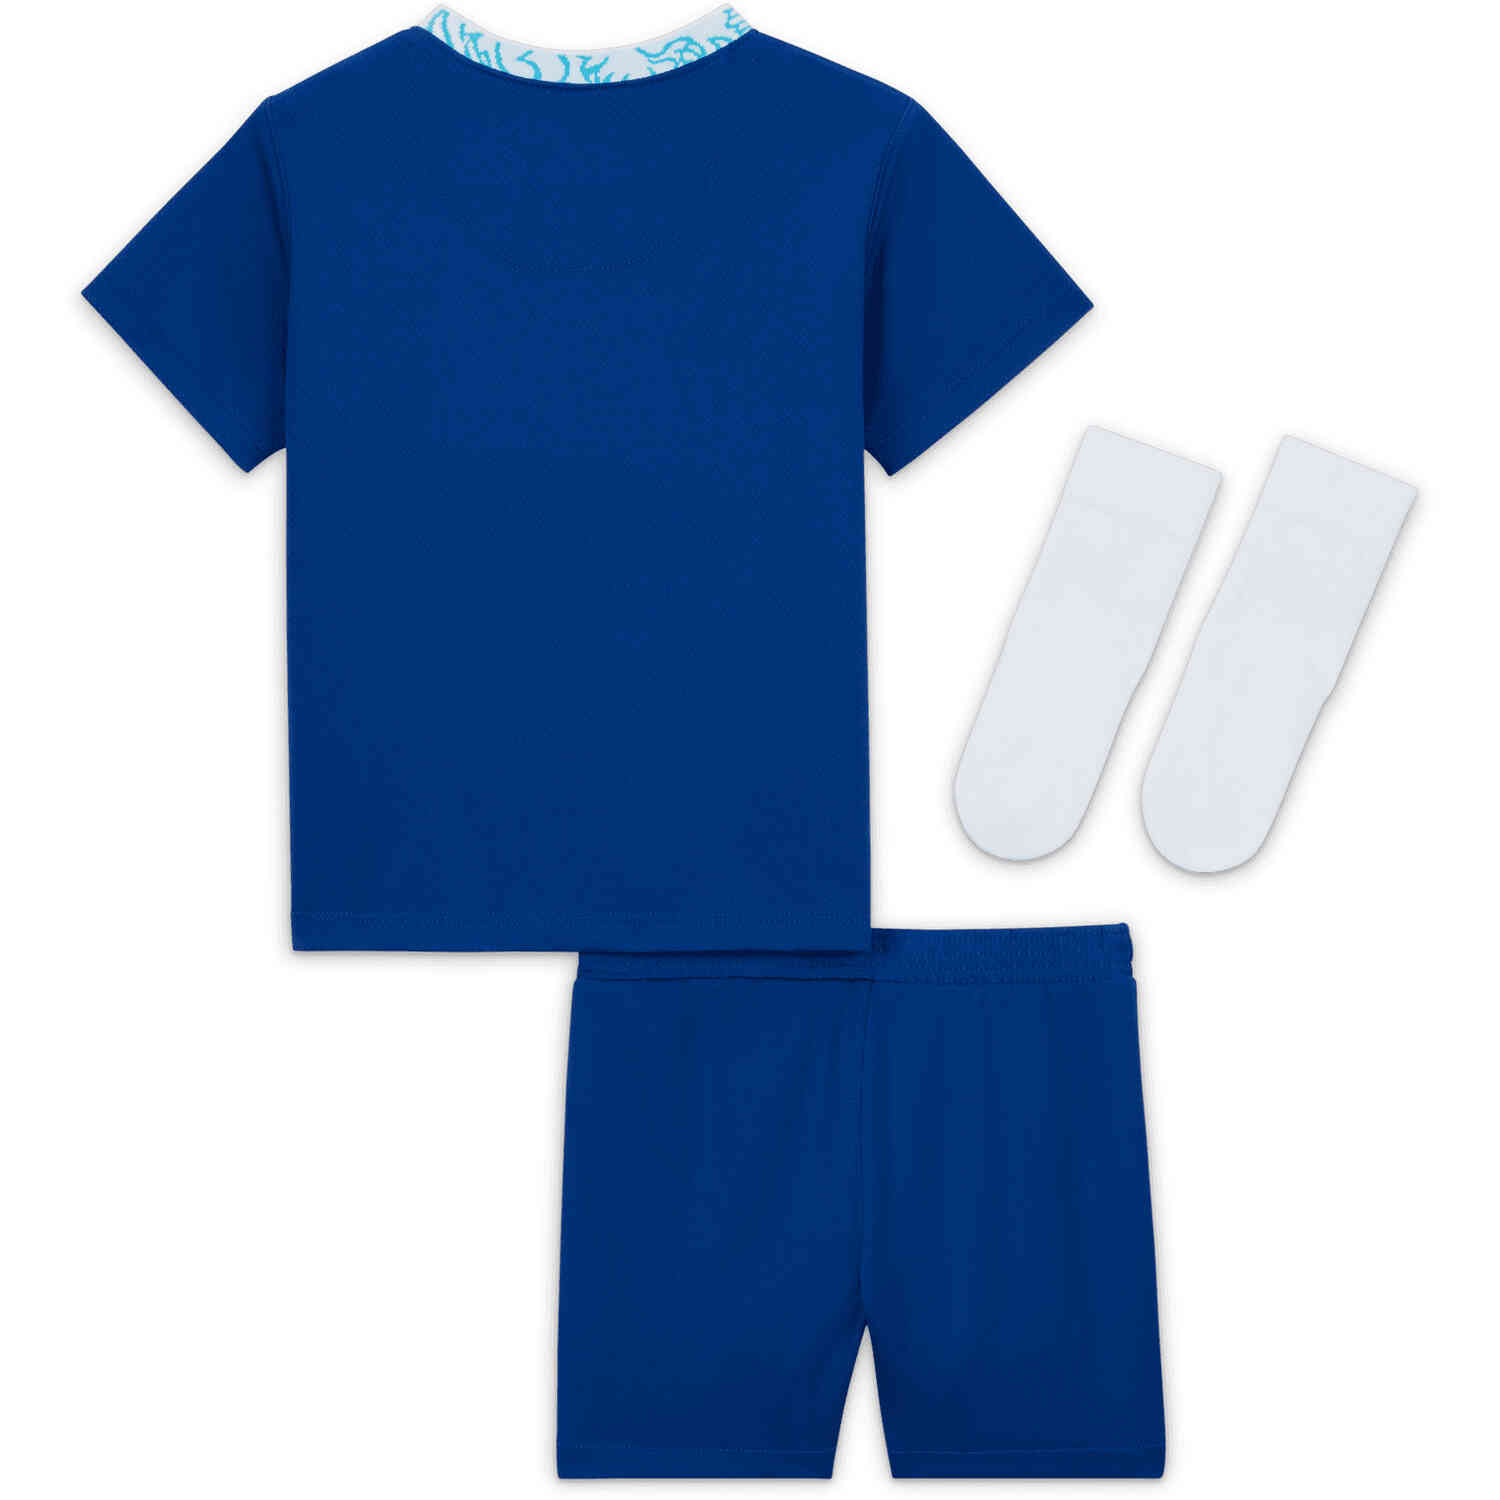 Infants Nike Chelsea 2022/23 Home Kit - Soccer Master